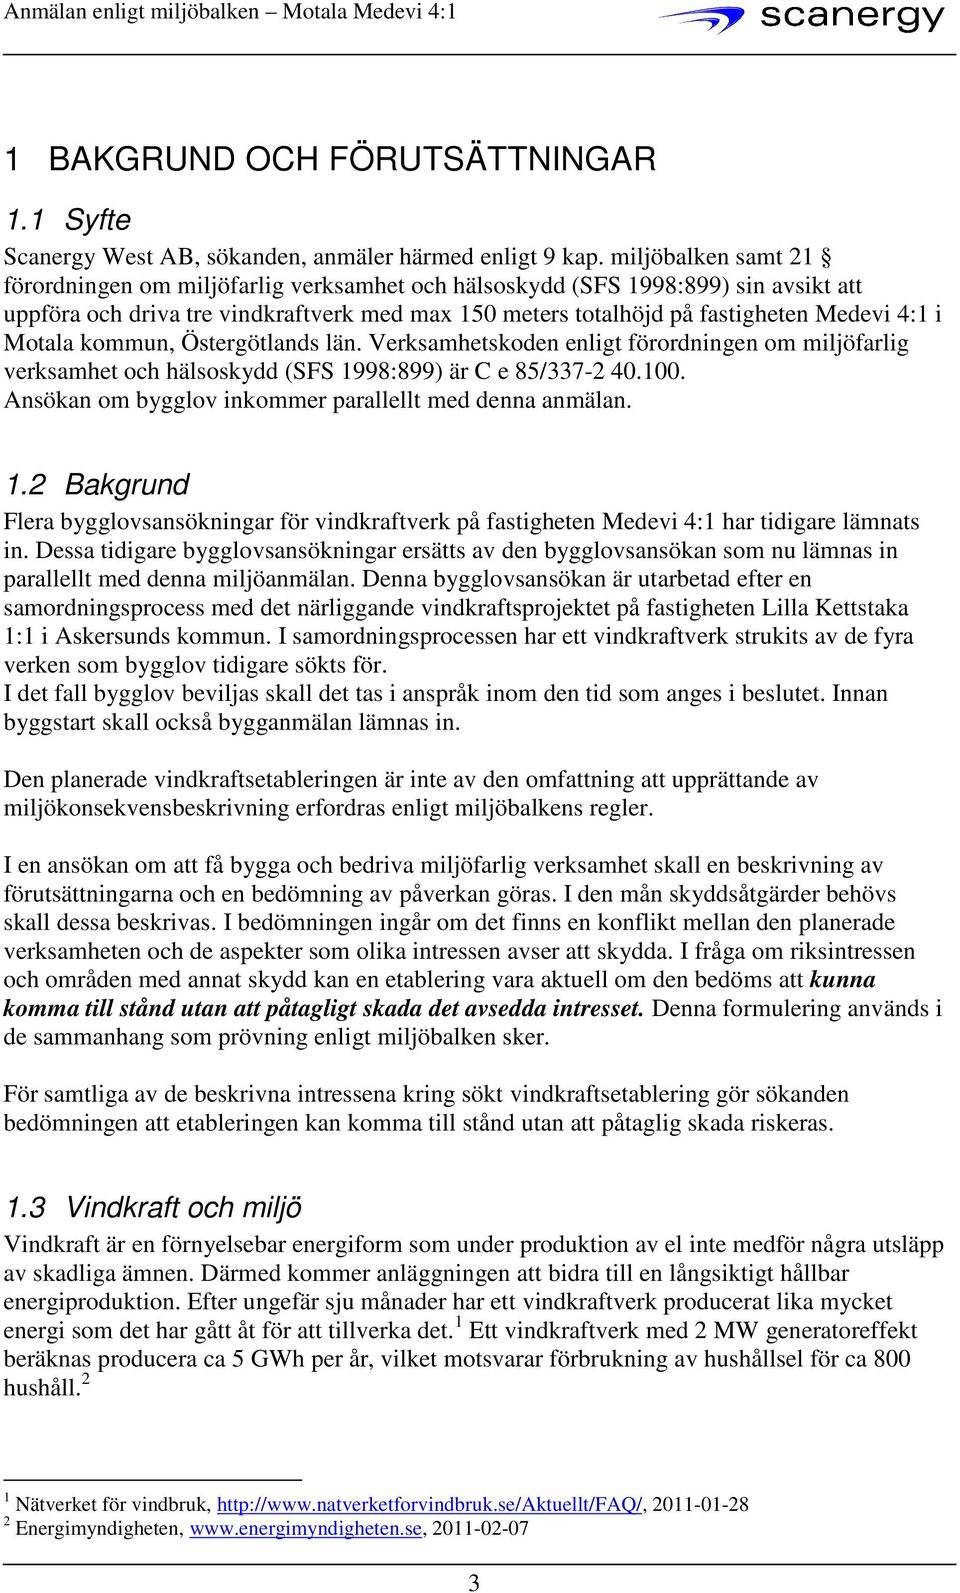 Motala kommun, Östergötlands län. Verksamhetskoden enligt förordningen om miljöfarlig verksamhet och hälsoskydd (SFS 1998:899) är C e 85/337-2 40.100.